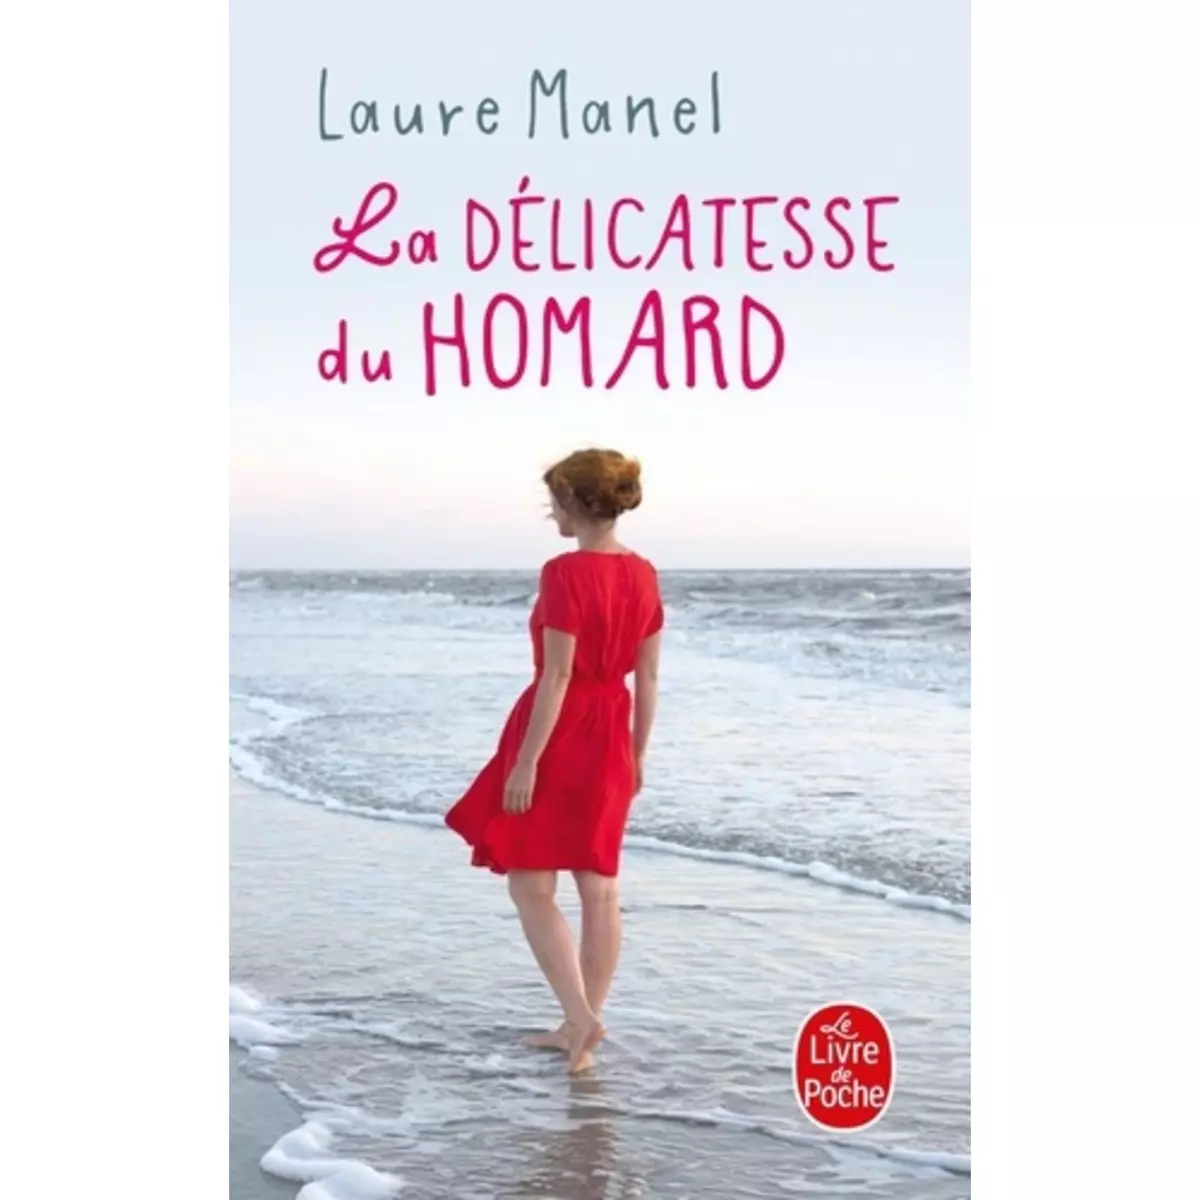  LA DELICATESSE DU HOMARD, Manel Laure